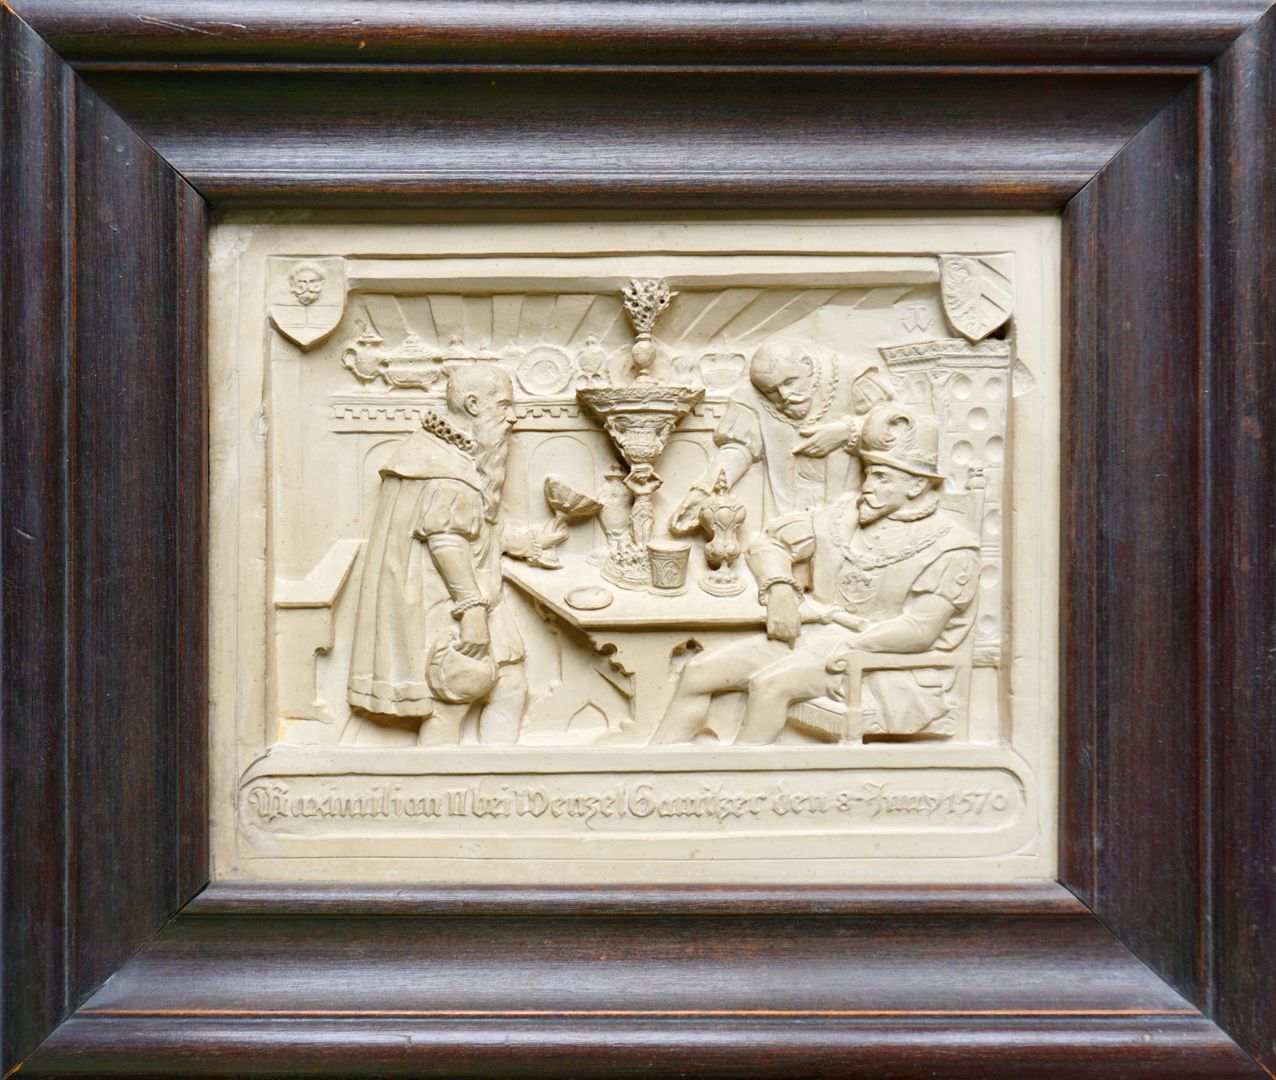 Kaiser Maximilian II. in Wenzel Jamnitzers Goldschmiedewerkstatt Gesamtansicht, in den oberen Ecken die Wappen von Jamnitzer und der Stadt Nürnberg